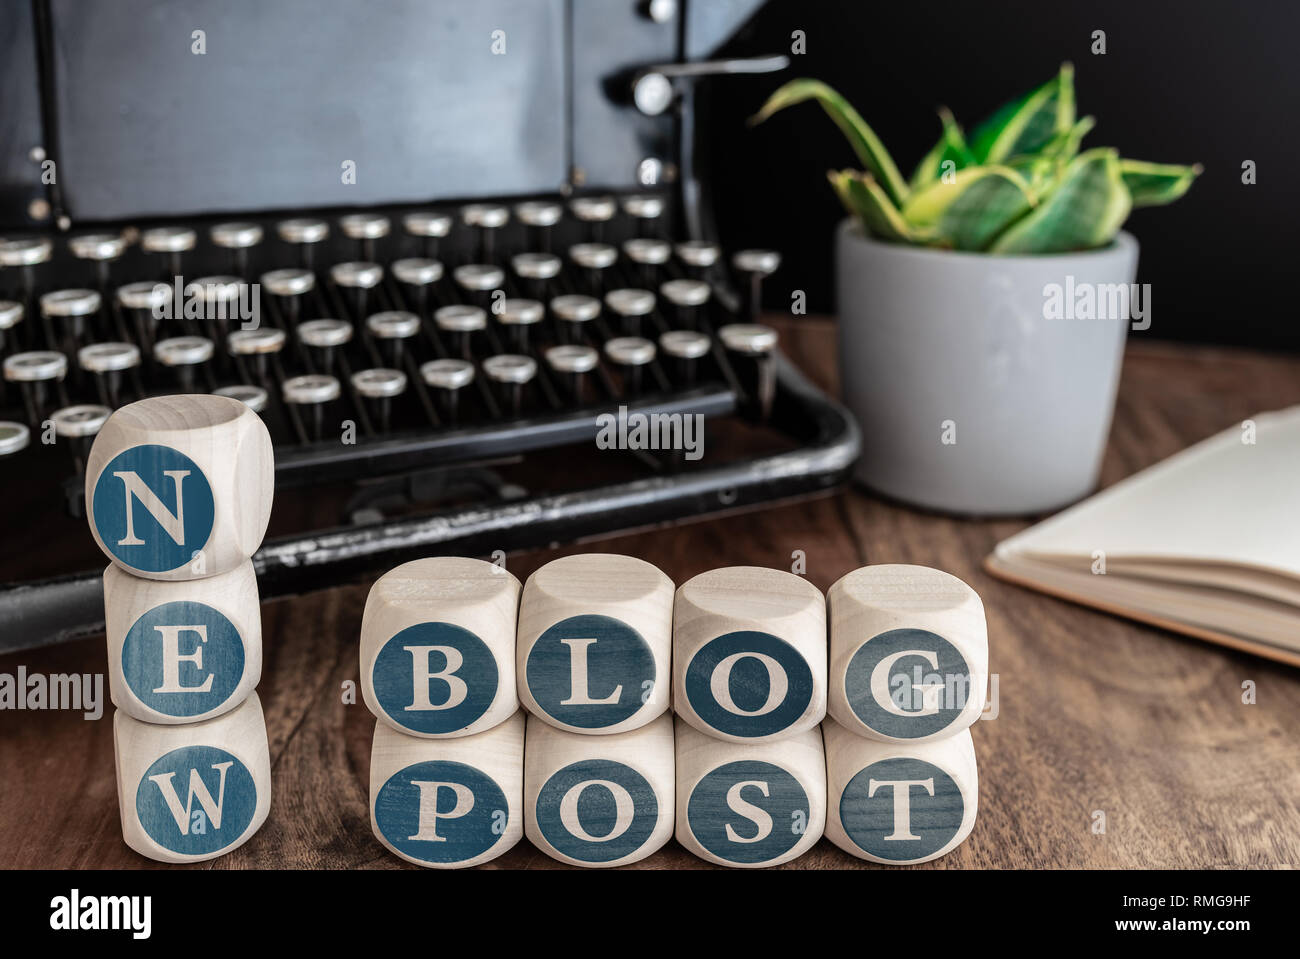 Mots New blog post sur des blocs de bois contre vintage typewriter, plante en pot et notes sur la table. Banque D'Images